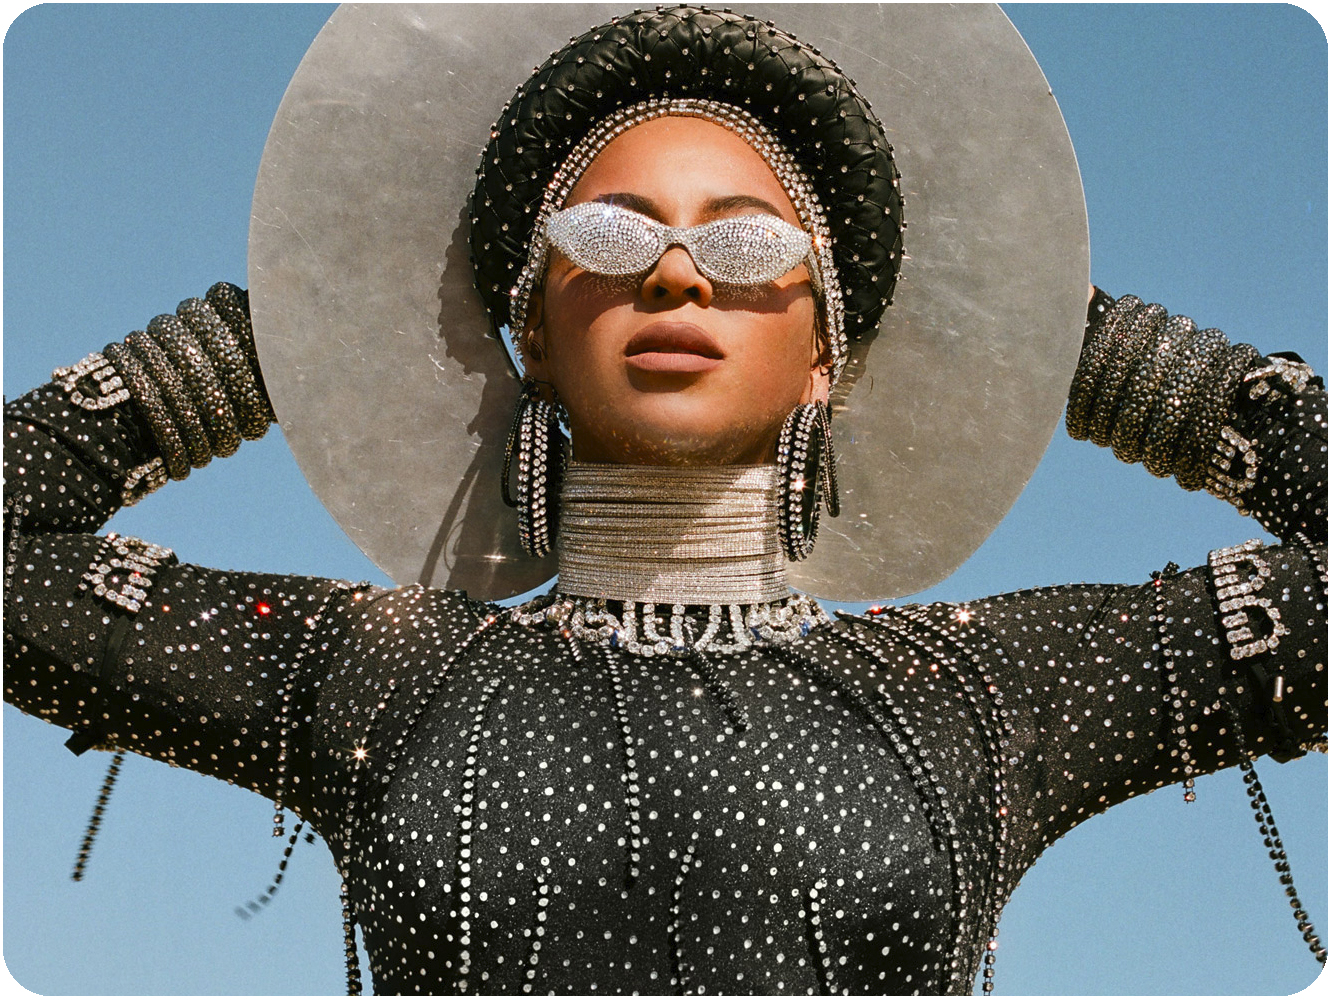  Cuenta Variety que ‘Black Is King’ de Beyoncé ha sido una de las películas más vistas de 2020 en streaming